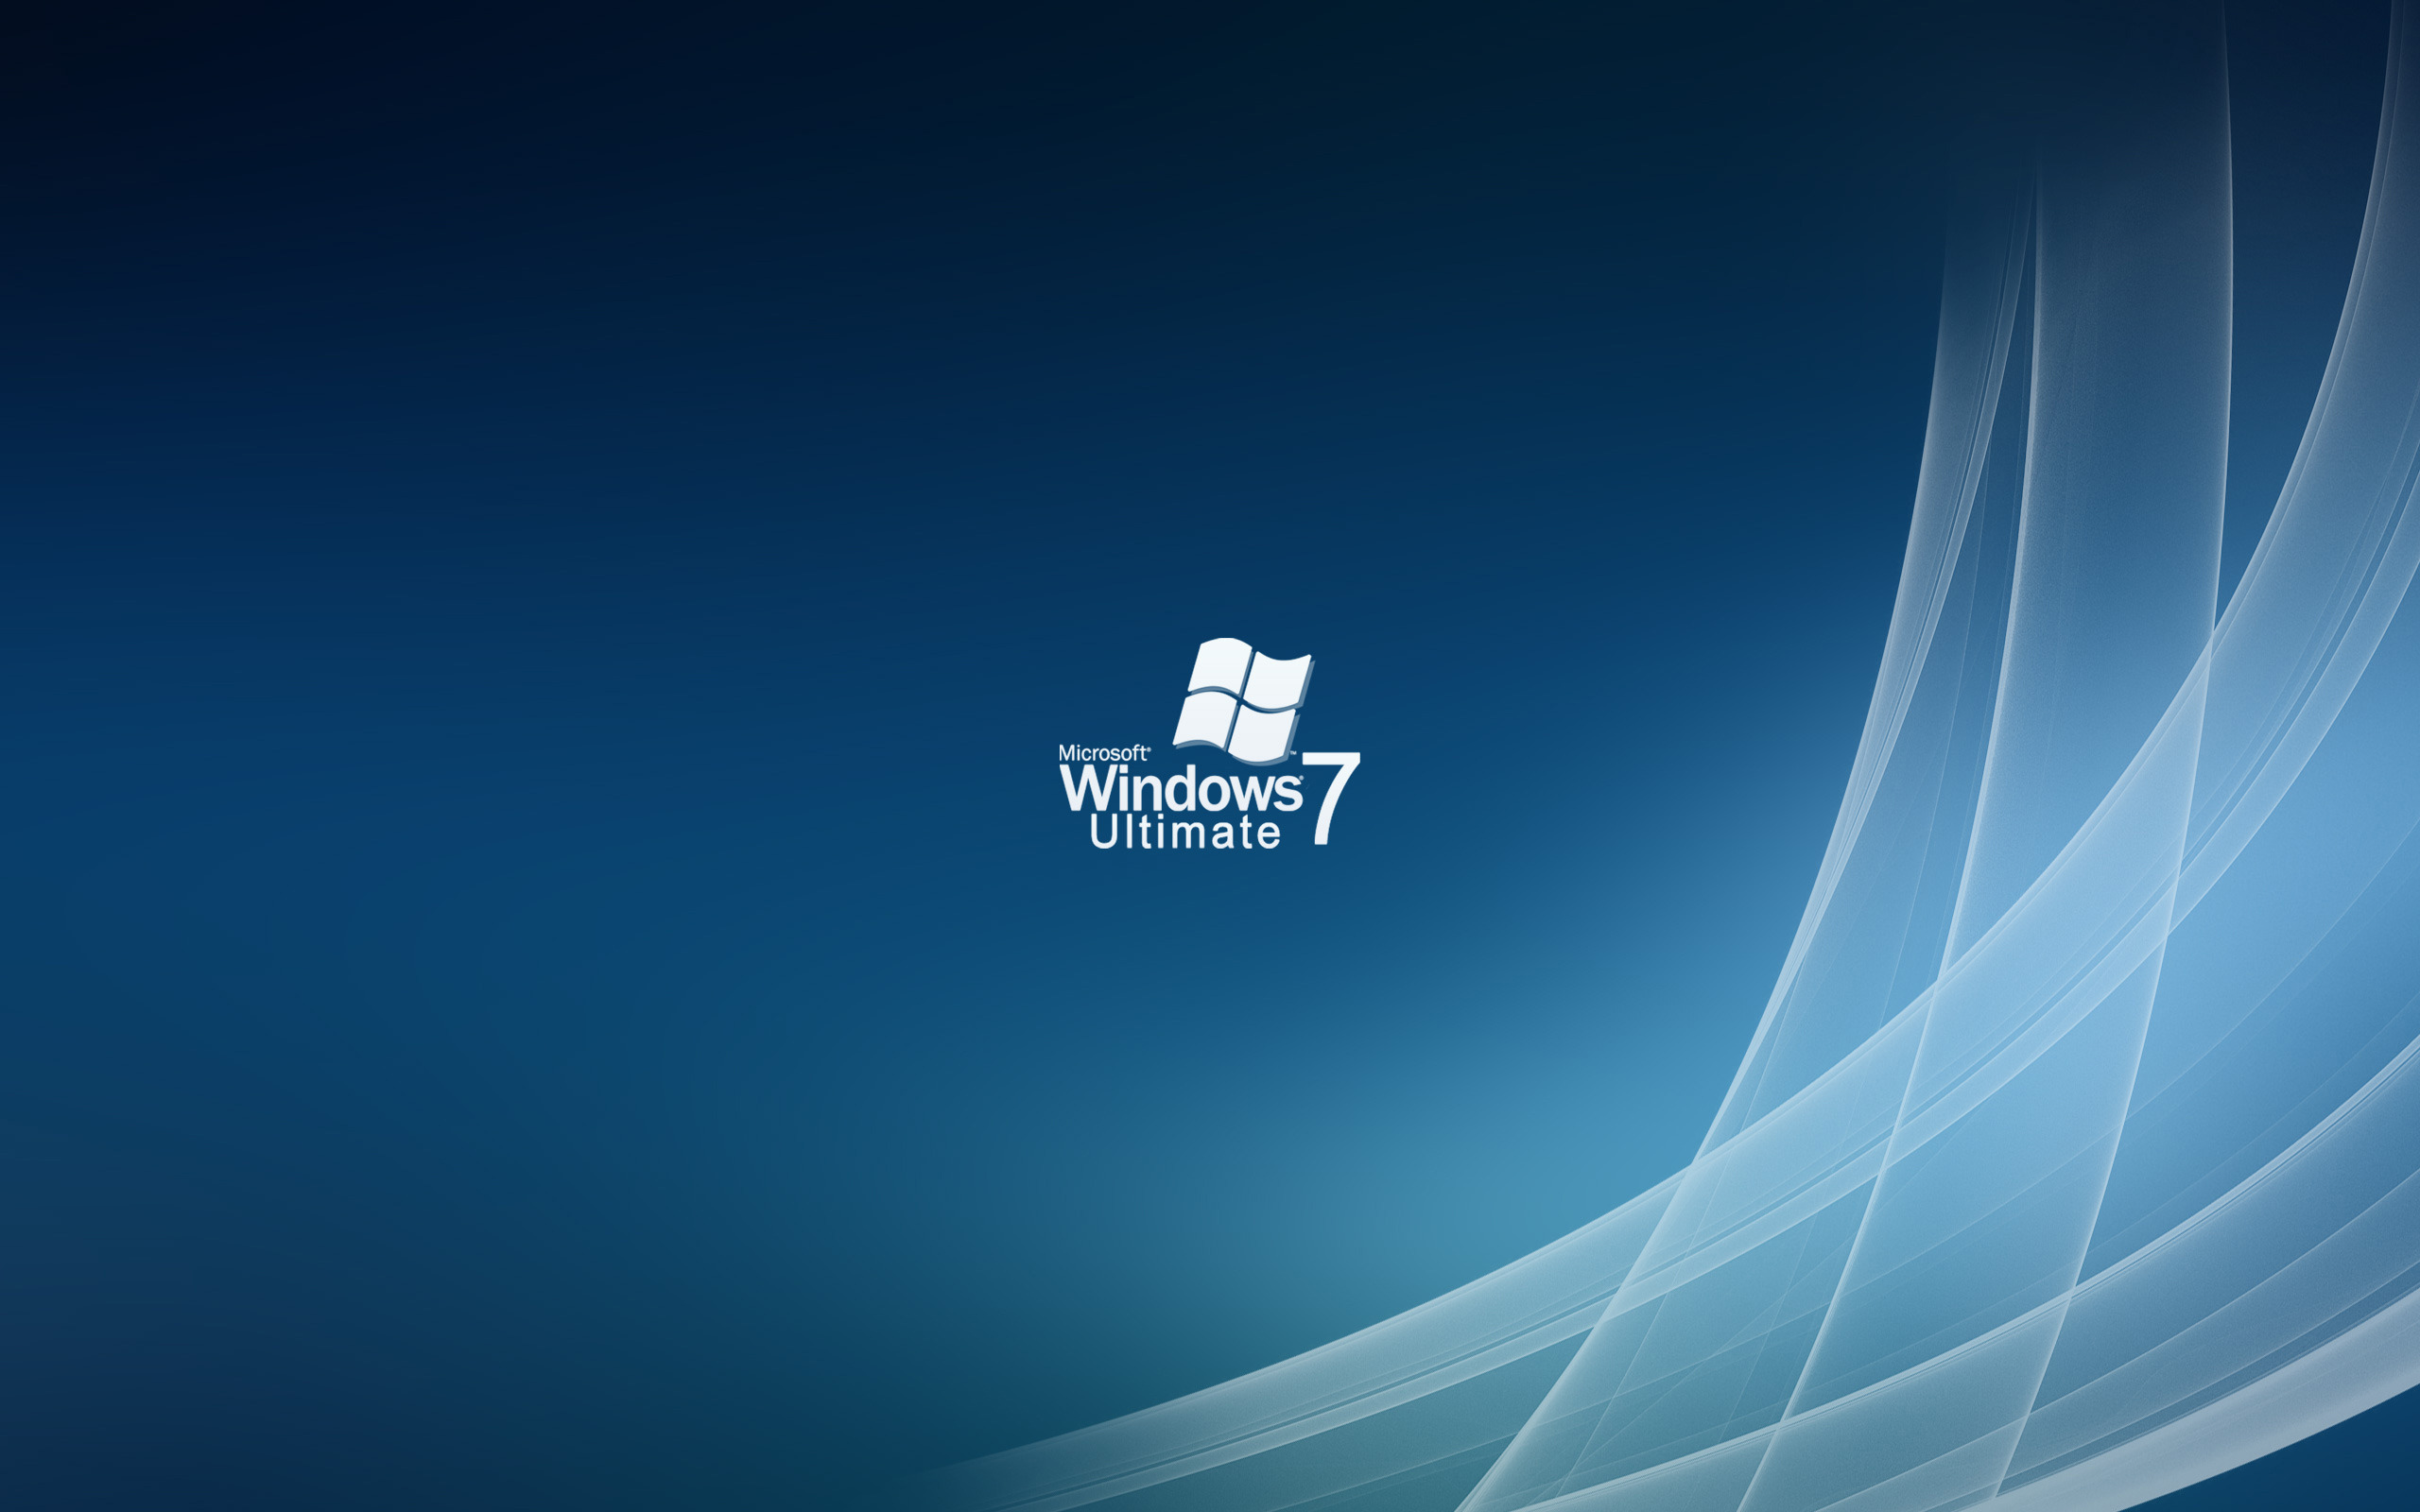 Bạn đang tìm kiếm một hình nền đẹp cho chiếc máy tính Windows 7 của mình? Hãy đến ngay trang web của chúng tôi để tải về những mẫu hình nền đẹp nhất hoàn toàn miễn phí. Chúng tôi đảm bảo các hình ảnh sẽ mang đến cho bạn một trải nghiệm tuyệt vời khi sử dụng máy tính của mình.